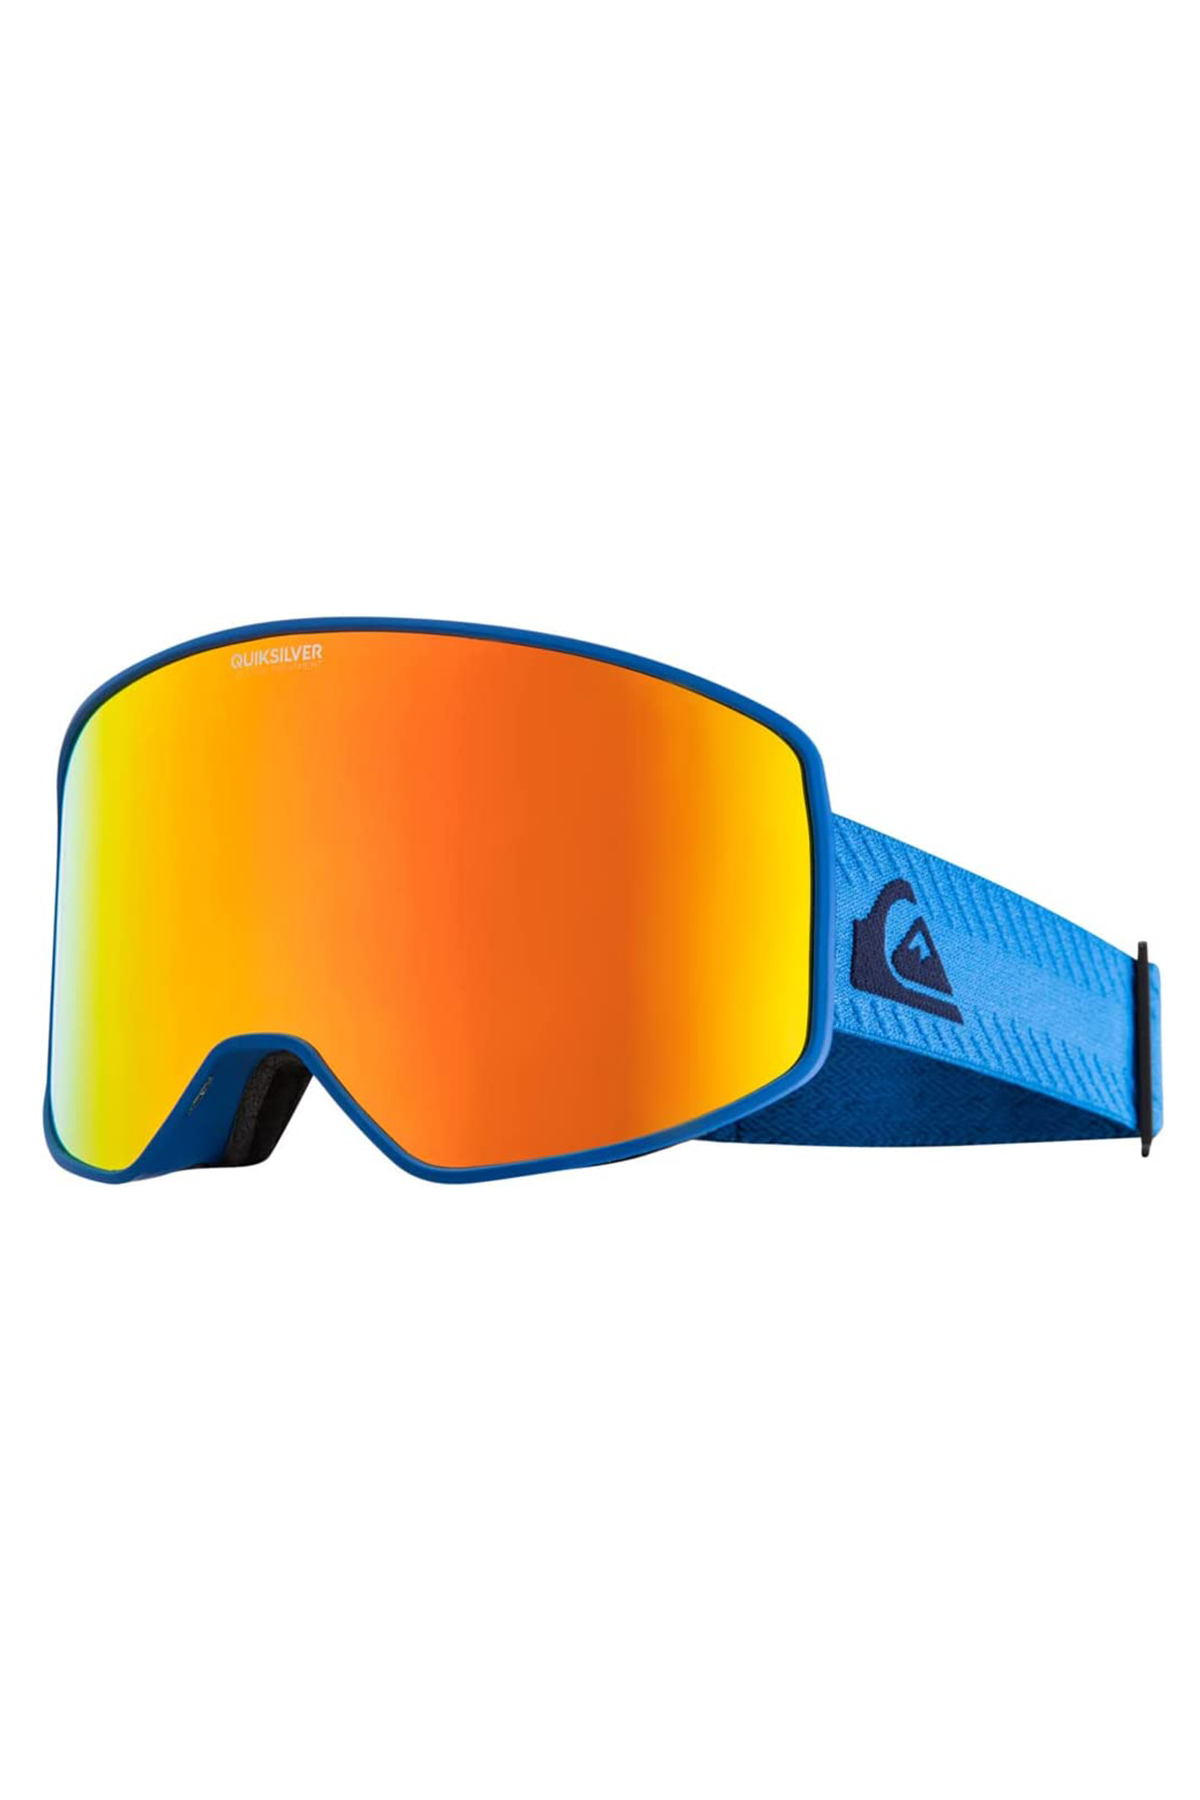 Quiksilver Storm Erkek Mavi Kayak Gözlüğü